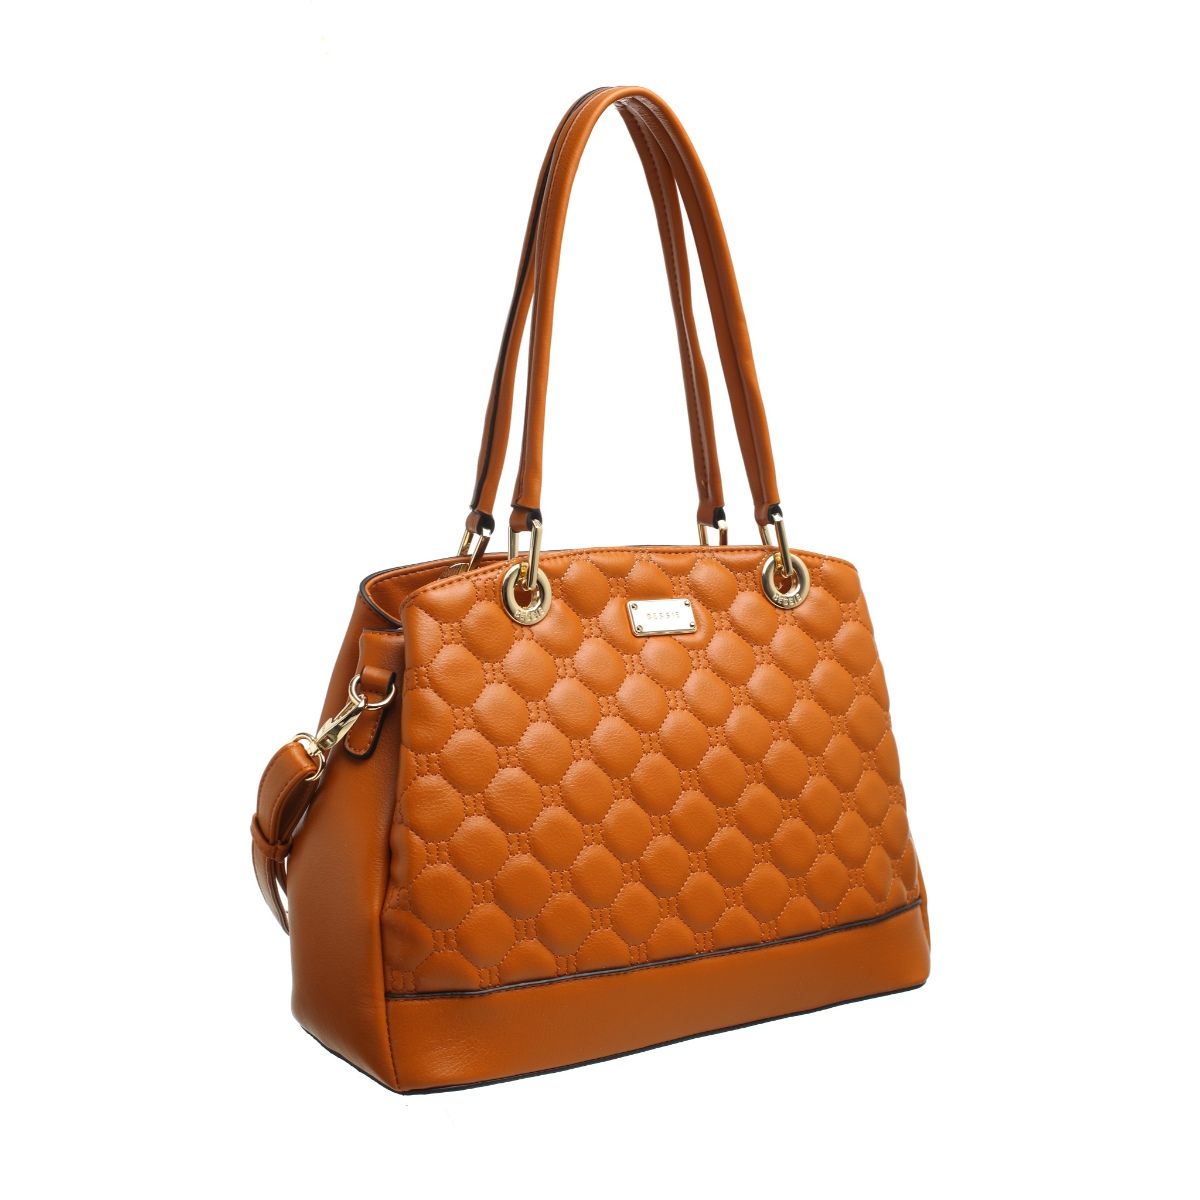 Bessie London Black Handbag / Shoulder Bag with Lion Emblem | eBay